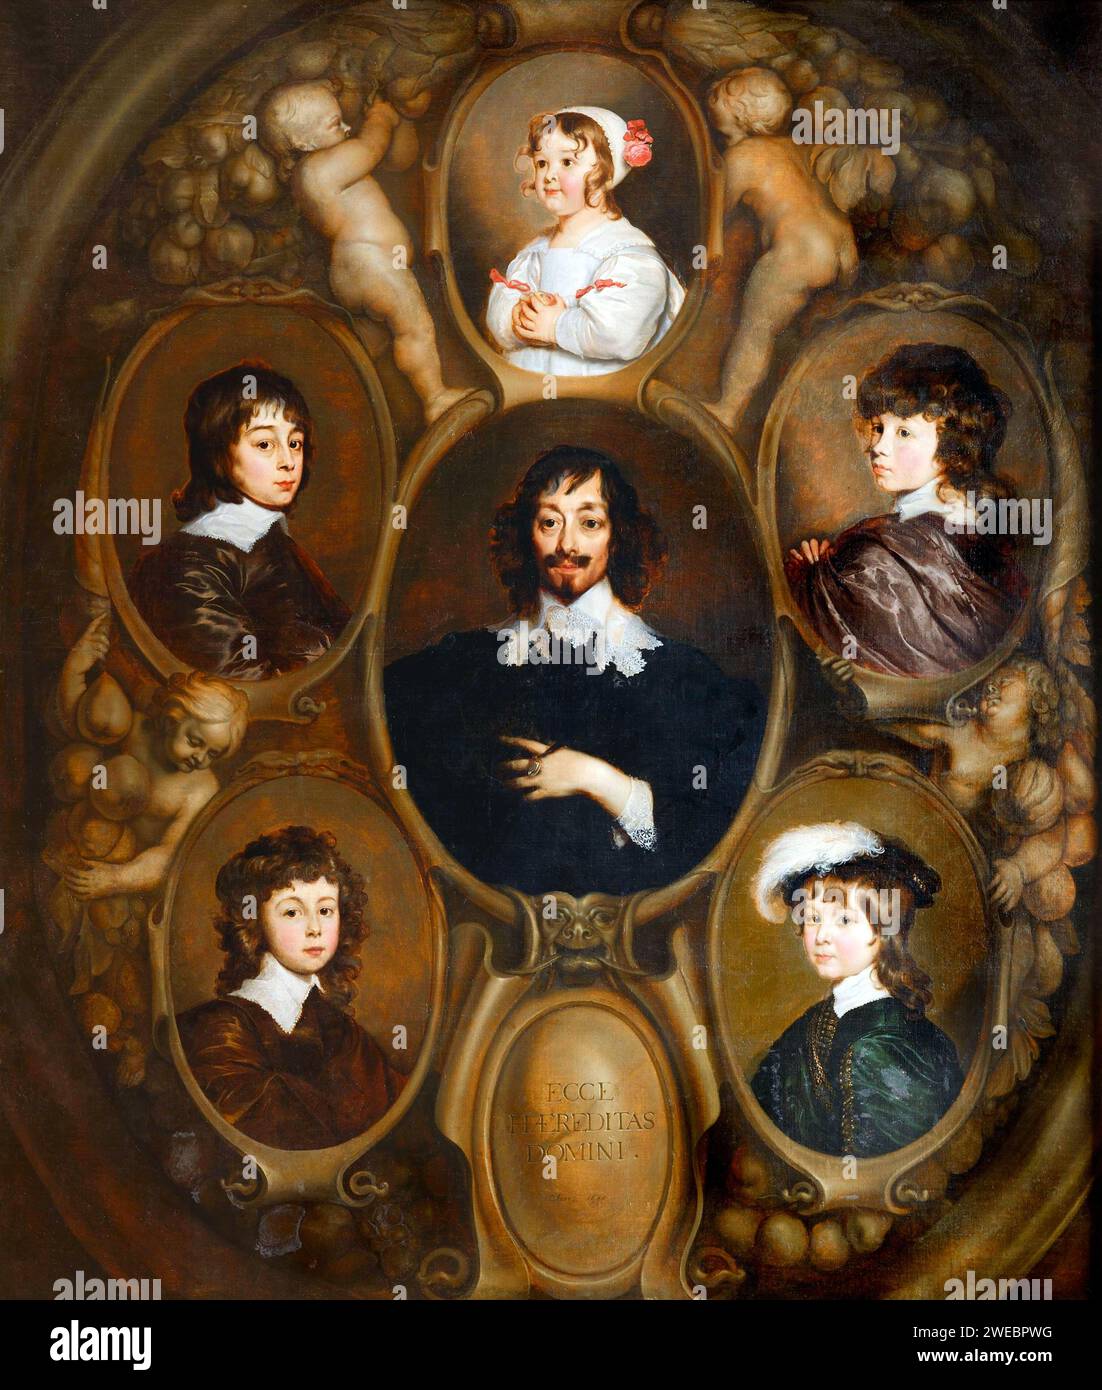 Constantijn Huygens und seine Kinder von Adriaen Hanneman seine fünf Kinder Constantijn II (R.; 1628-1697), Christiaen (B.l.; 1629-1695), Lodewijk (B.r.; 1631-1699), Philips (l.;1633-1699) und Suzanne (s.c.; 1637-1725) Stockfoto